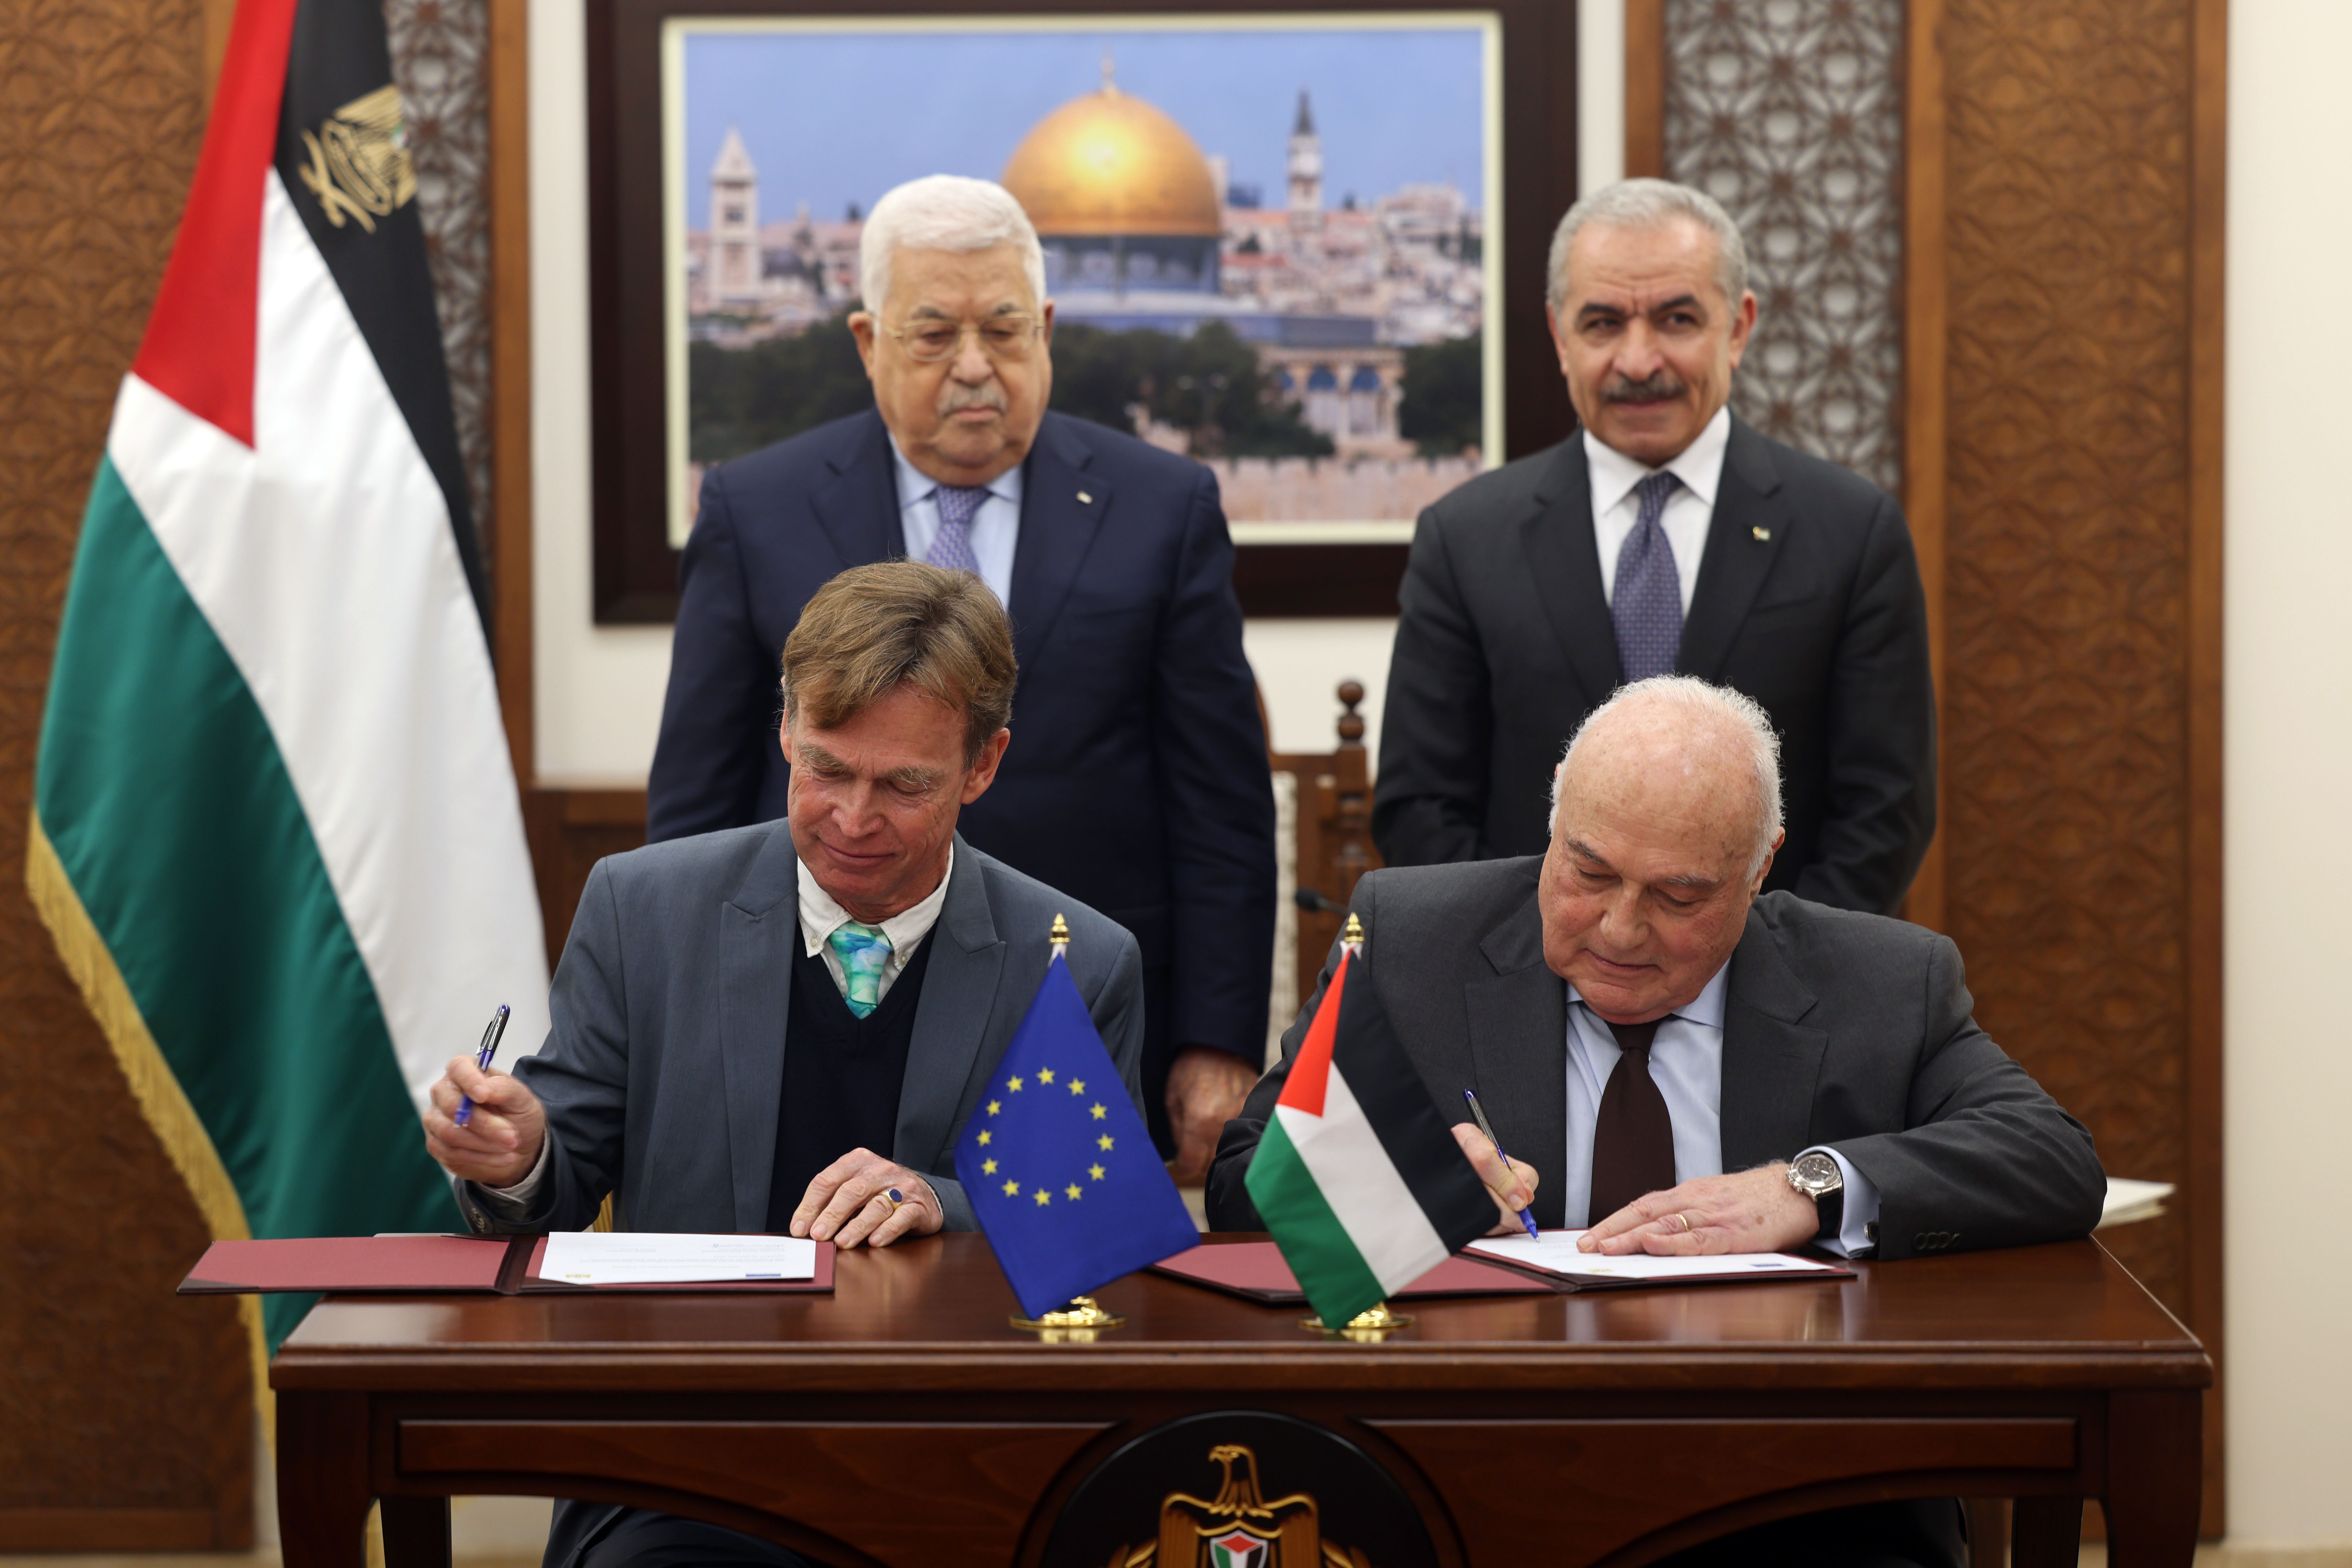 الرئيس يرعى توقيع حزمة الدعم المالي لفلسطين من الاتحاد الأوروبي - أرشيفية